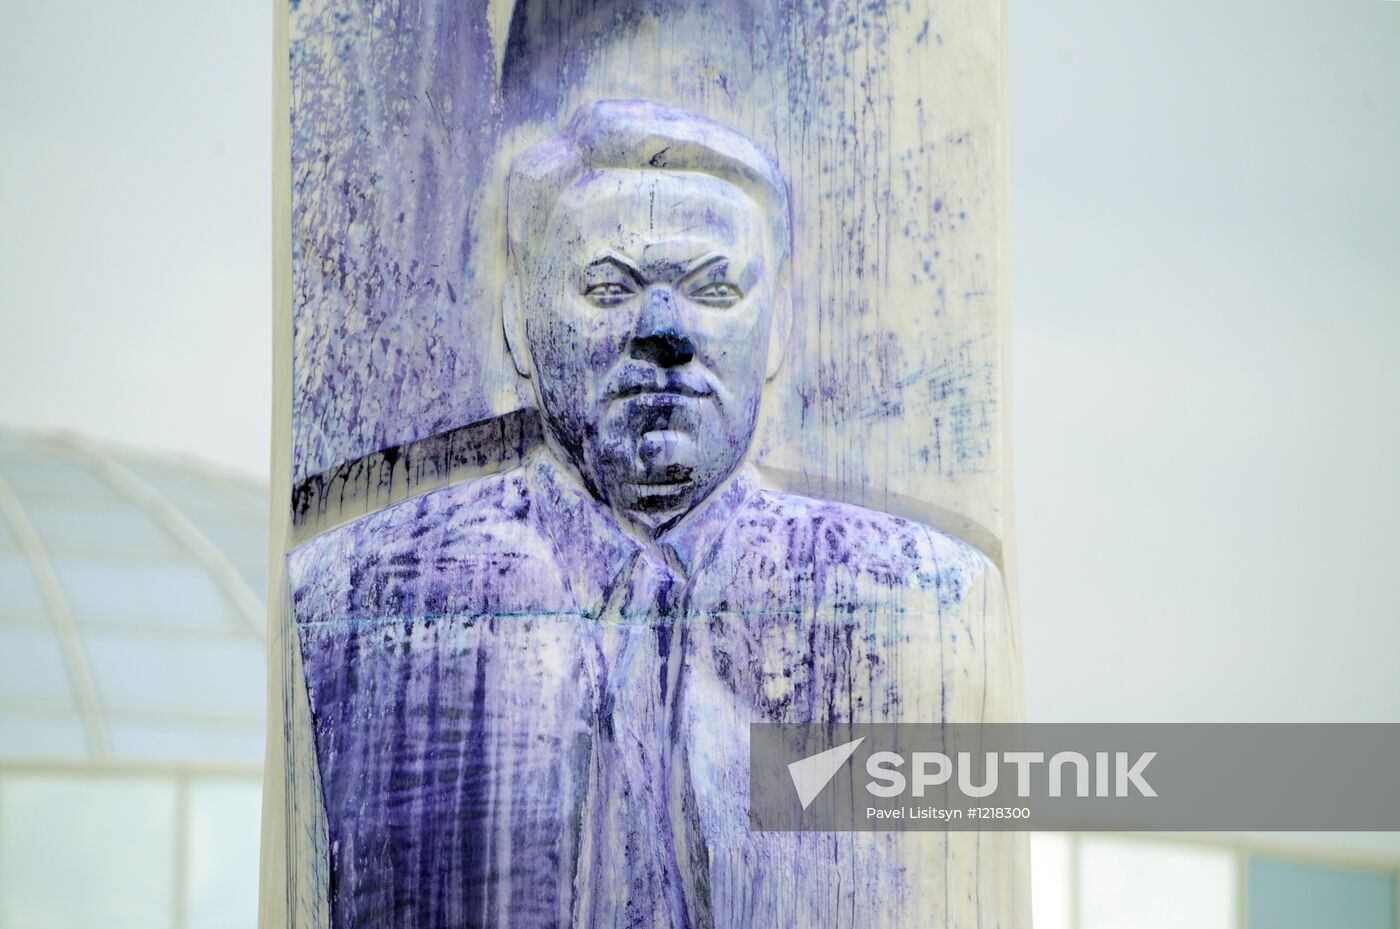 Boris Yeltsin memorial in Yekaterinburg vandalized